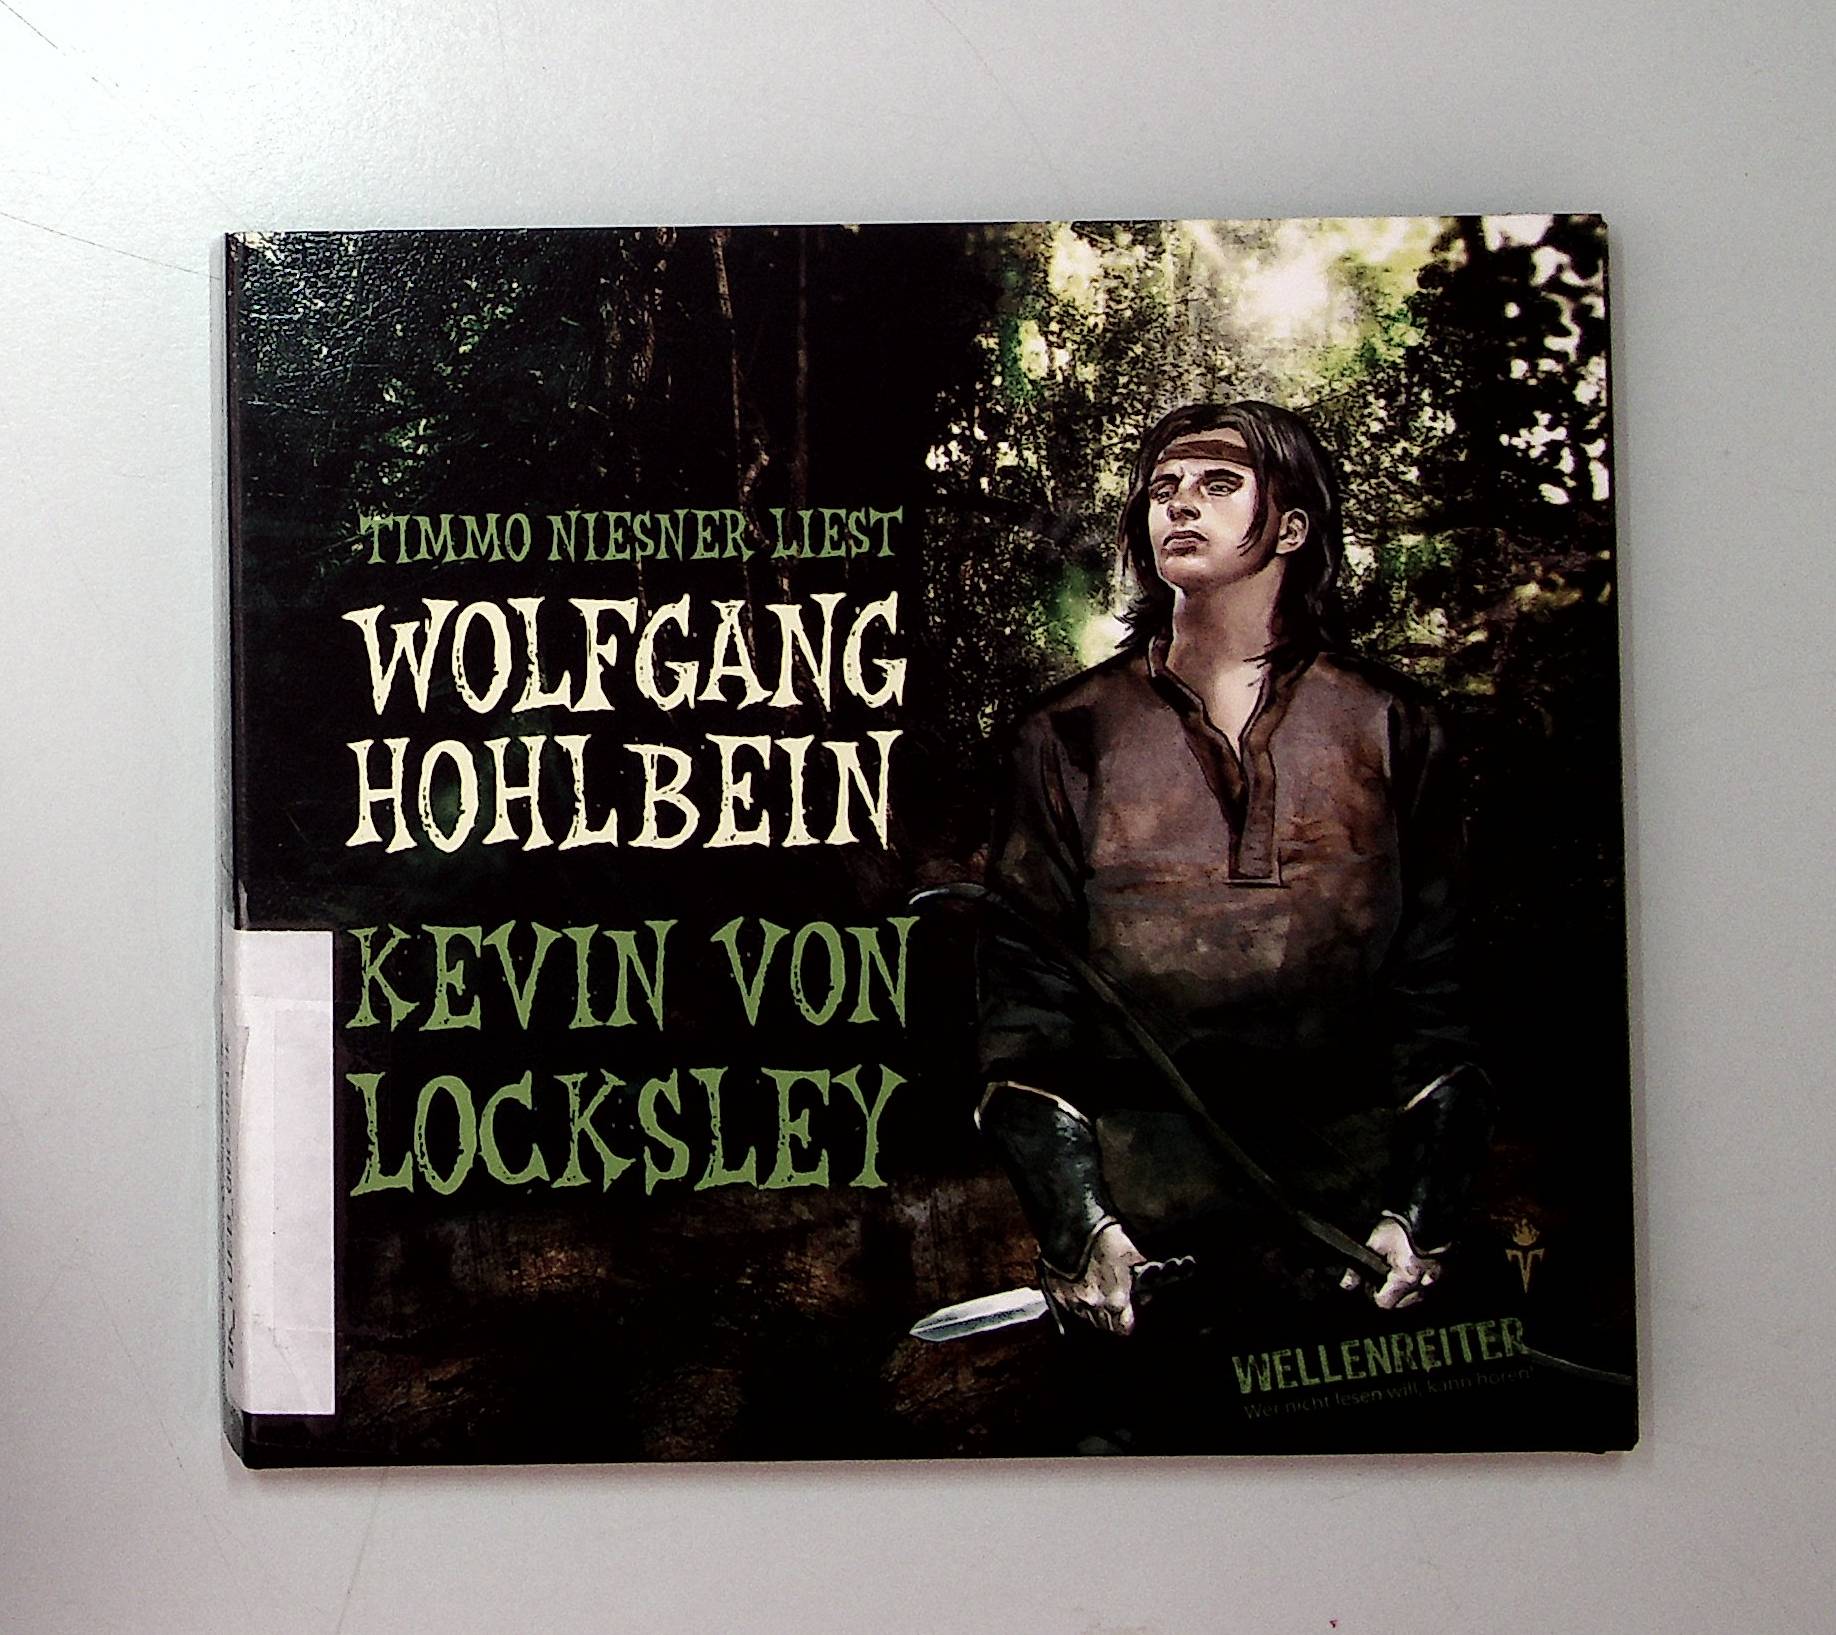 Timmo Niesner liest Wolfgang Hohlbein, Kevin von Locksley  Auflage: 1. - Hohlbein, Wolfgang